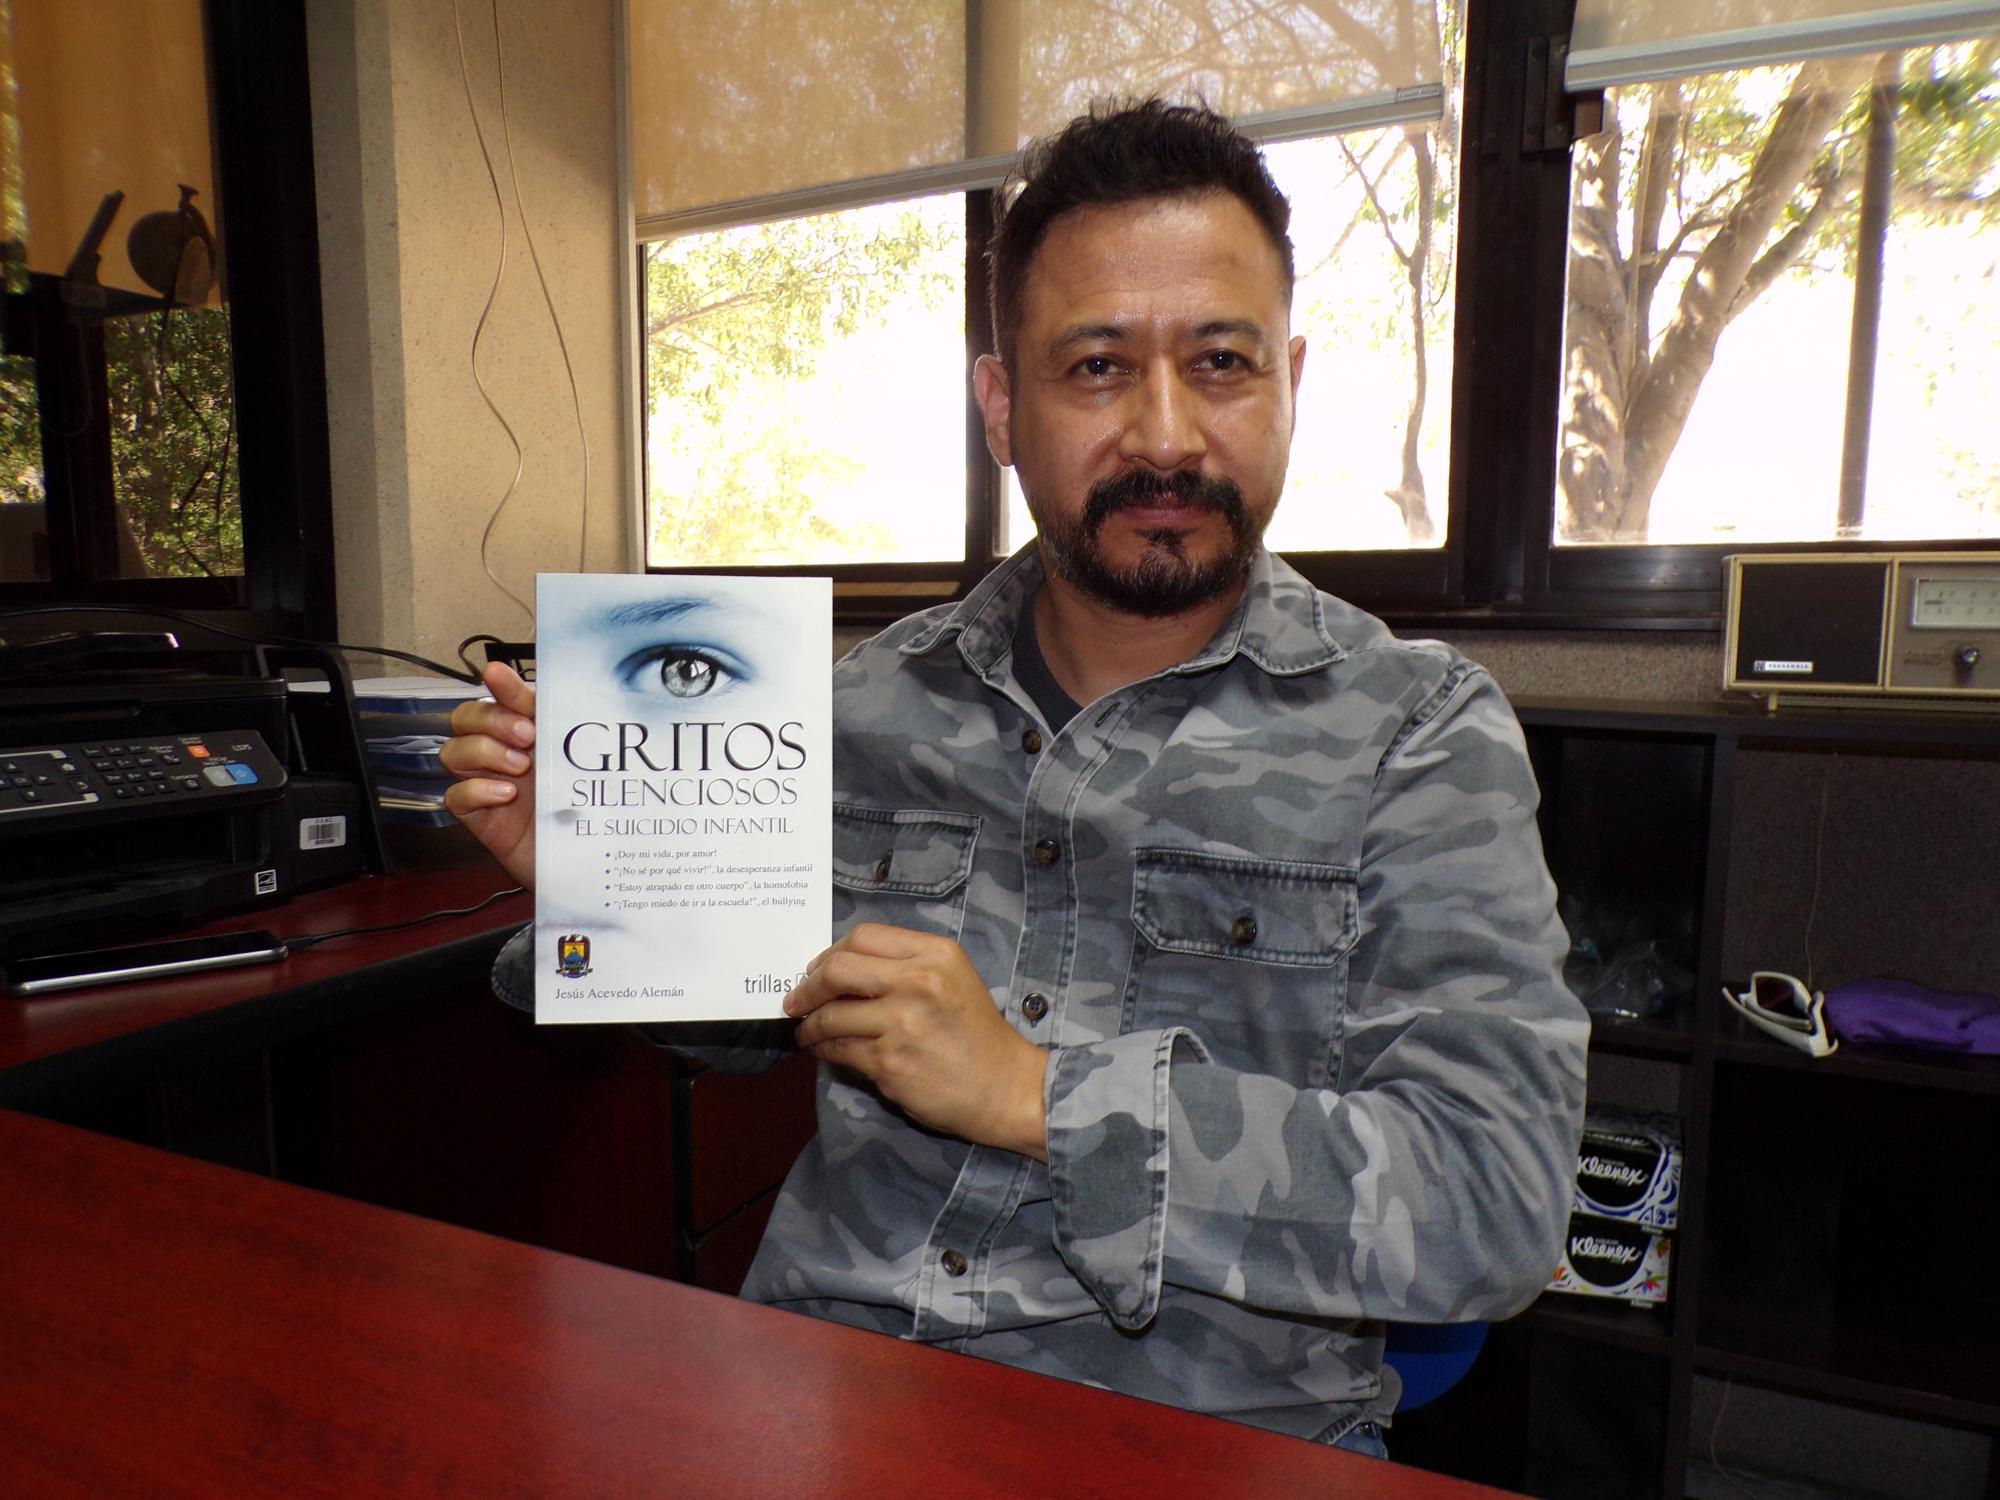 $!Jesús Acevedo Alemán, director de la Facultad de Trabajo Social de la Universidad Autónoma de Coahuila (UAdeC) y autor del libro “Gritos silenciosos. El suicidio infantil”.